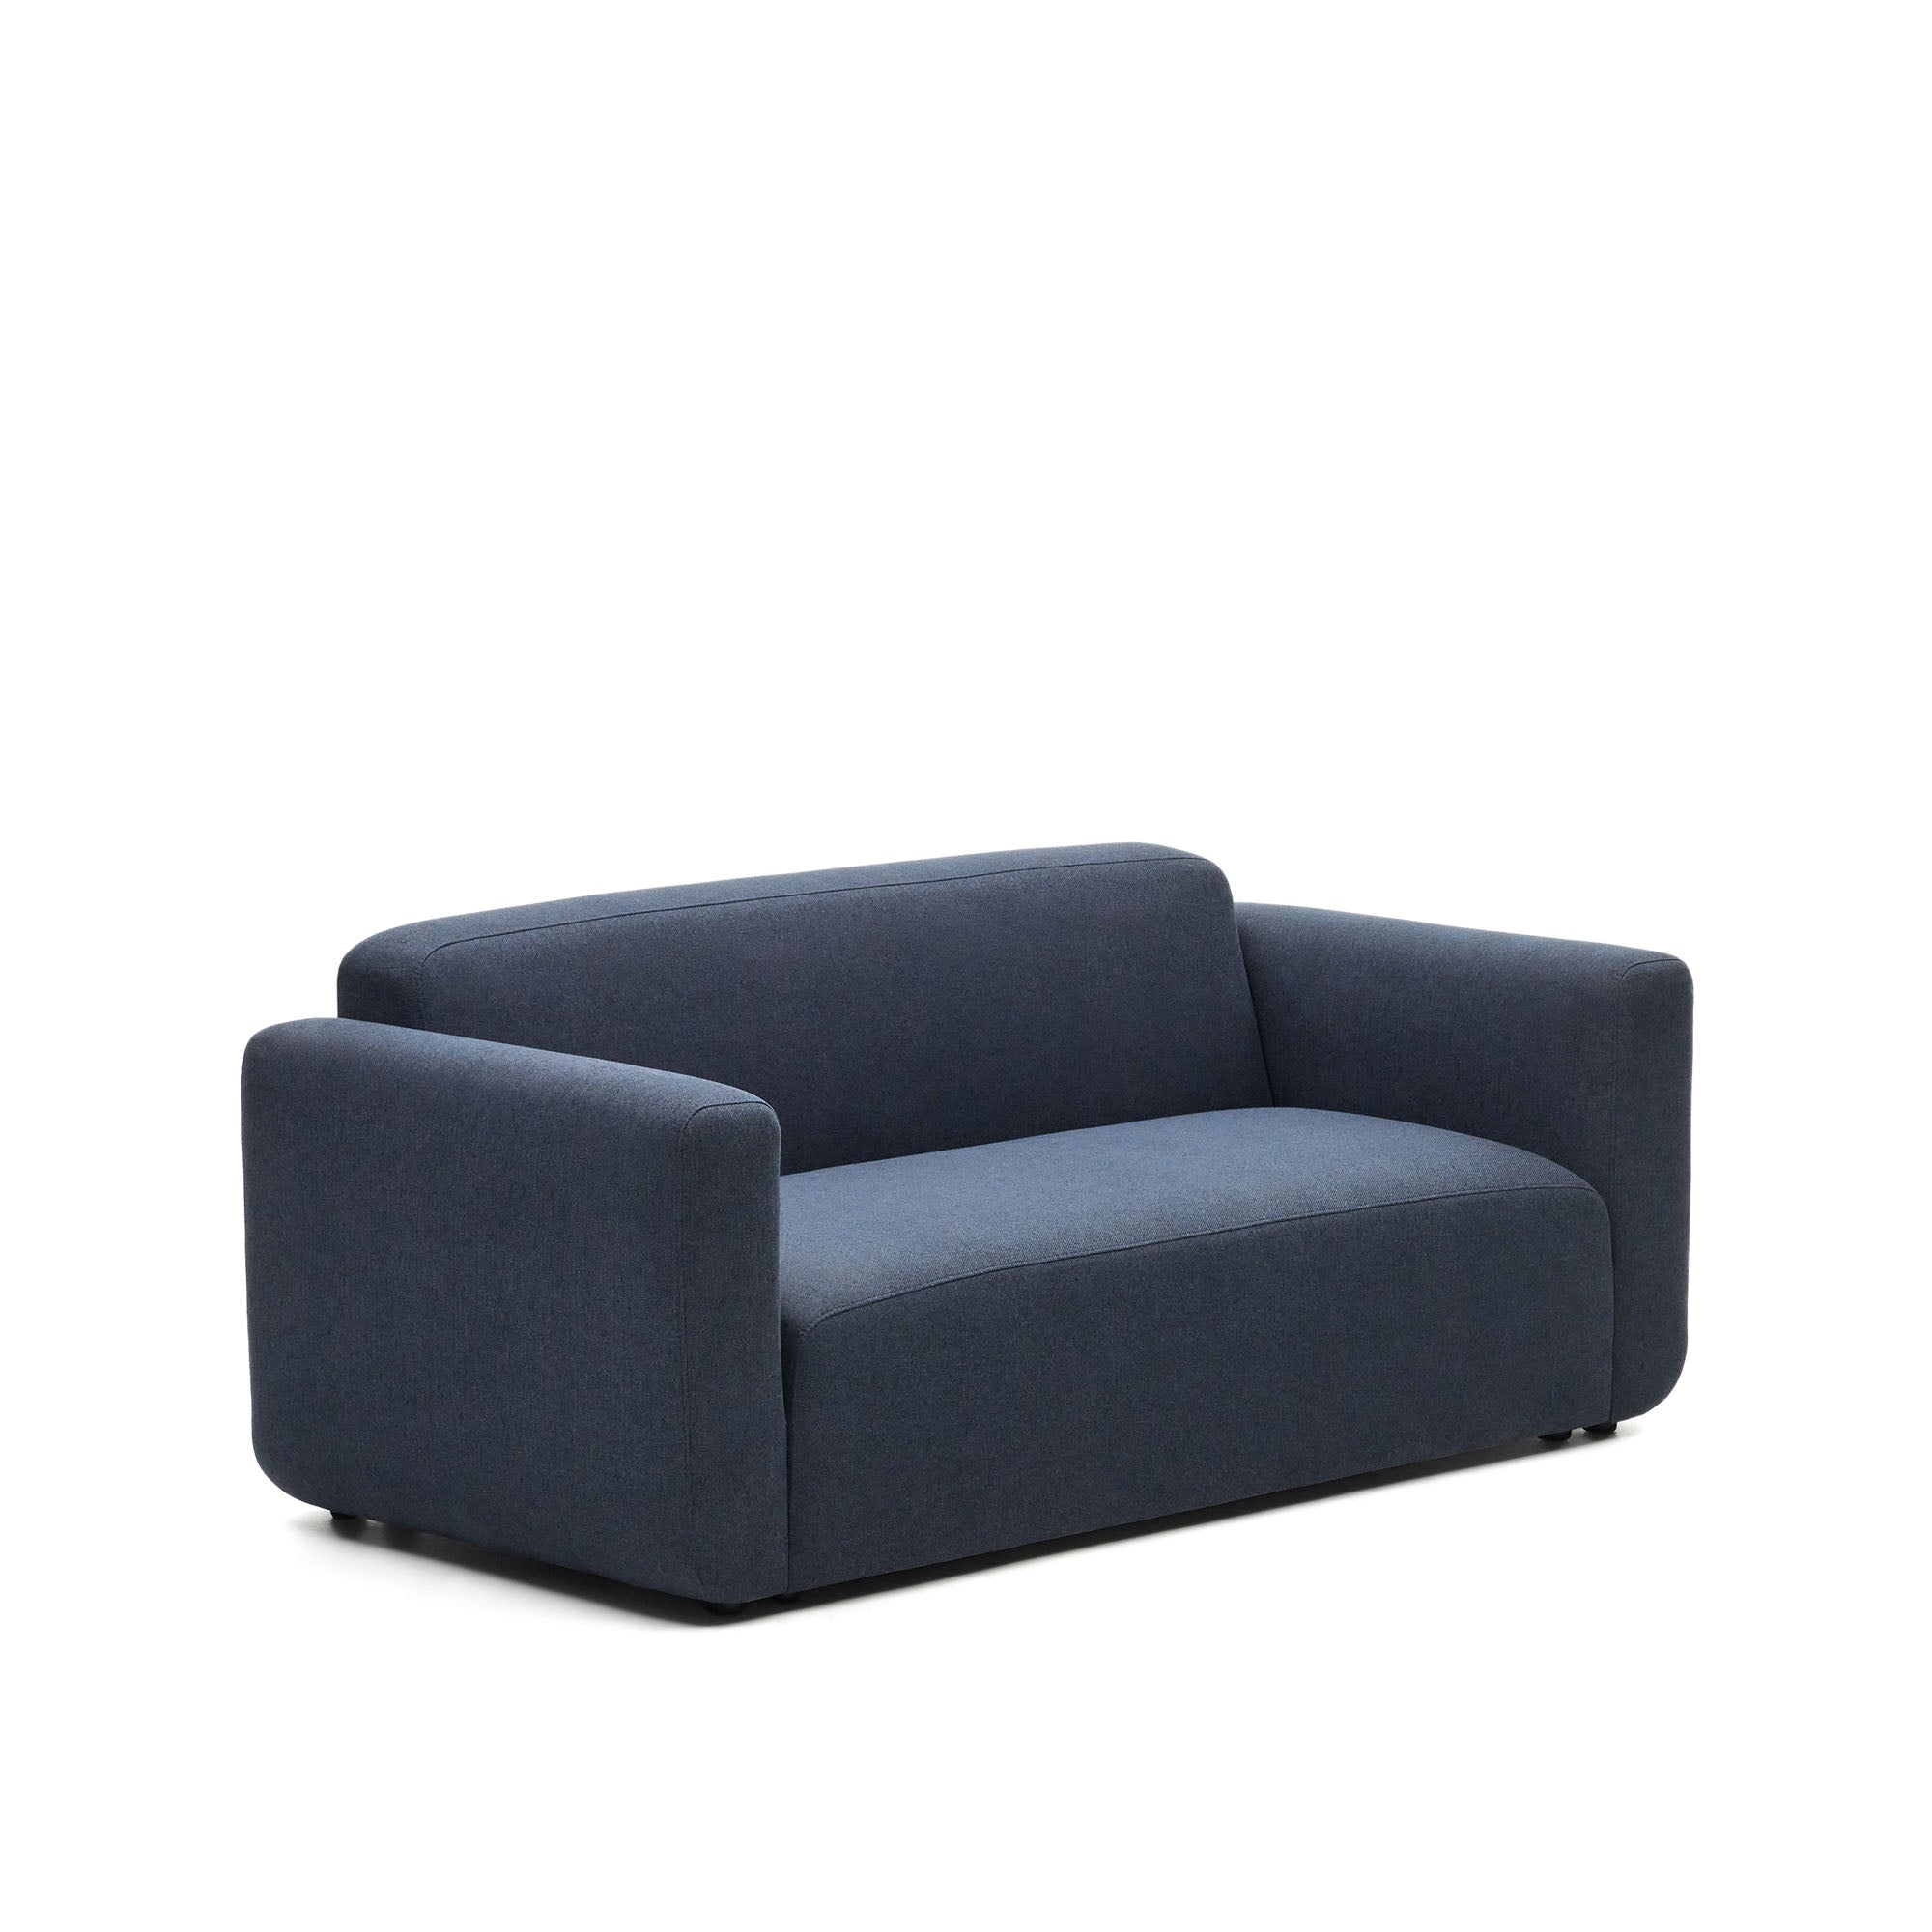 Neom 2 személyes moduláris kanapé kék színben, 188 cm